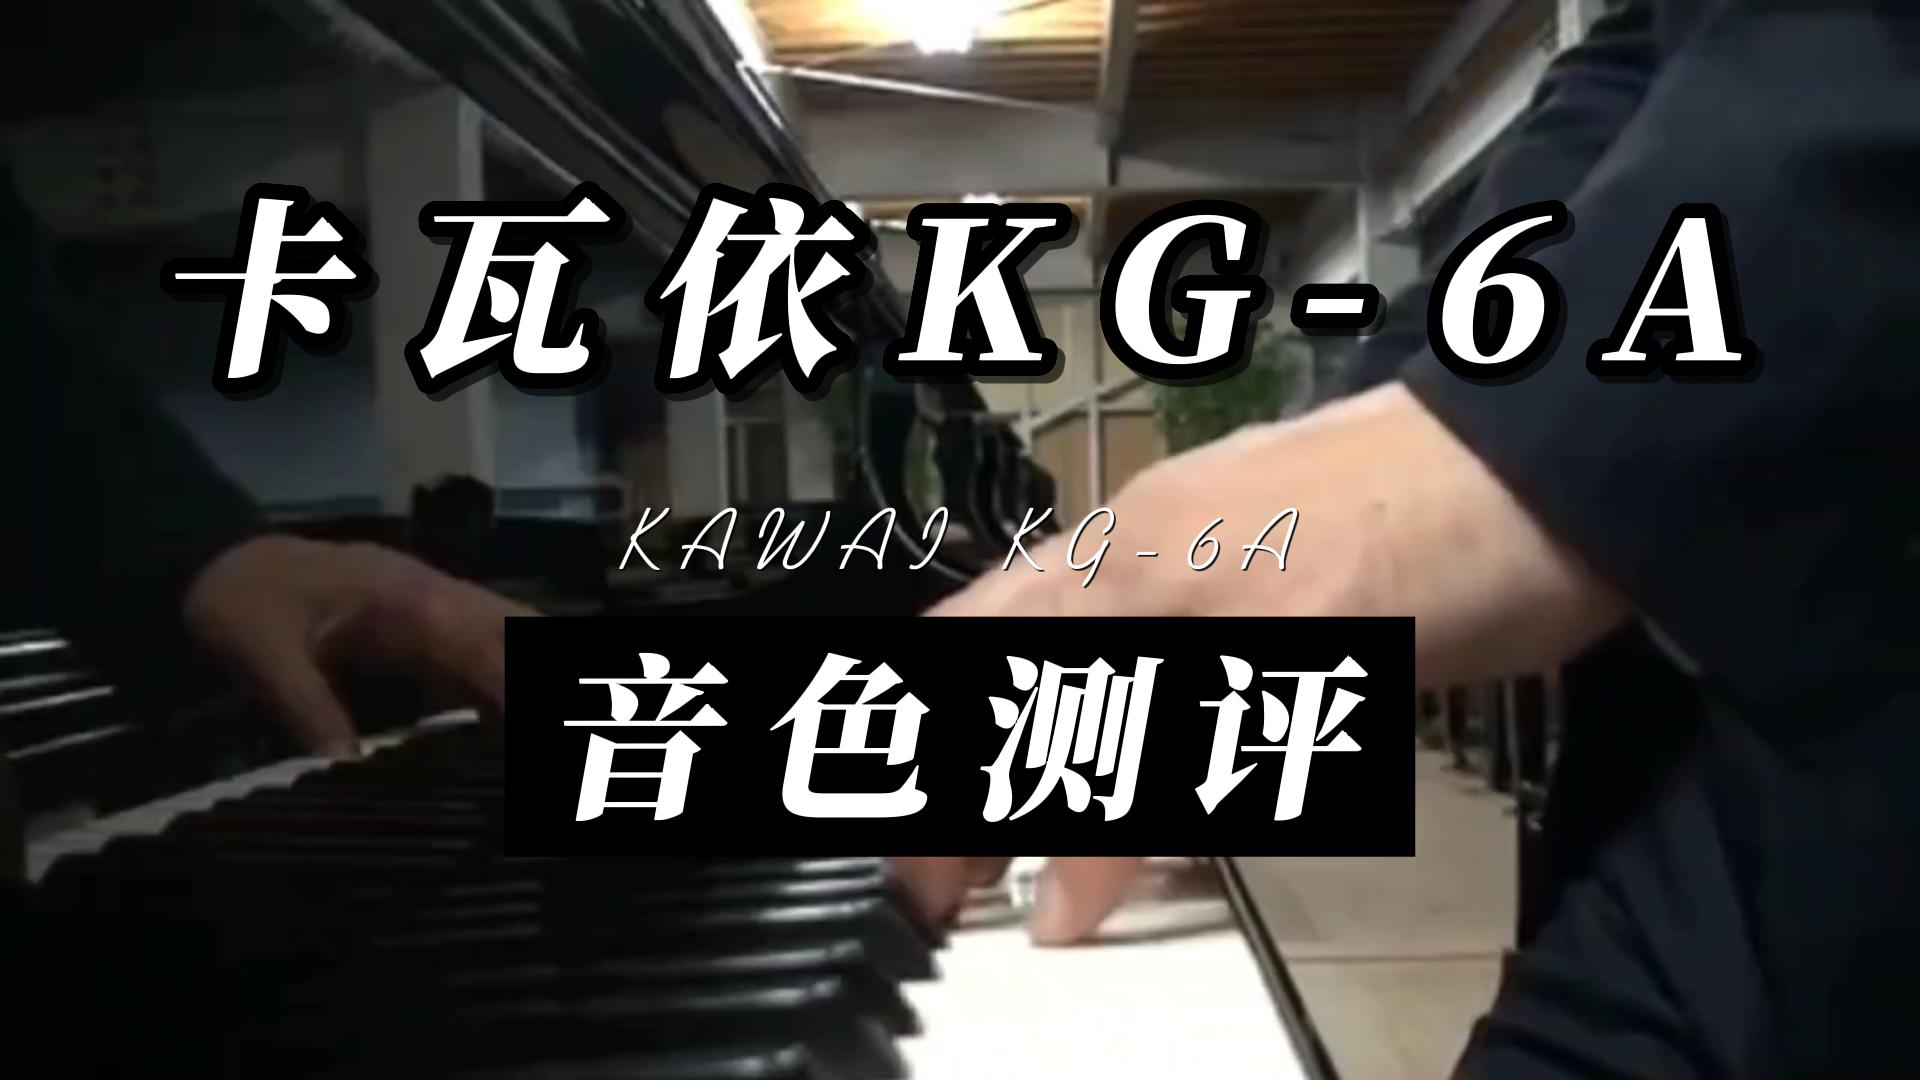 KAWAI 卡瓦依KG-6A钢琴音色测评_柏通租琴整理